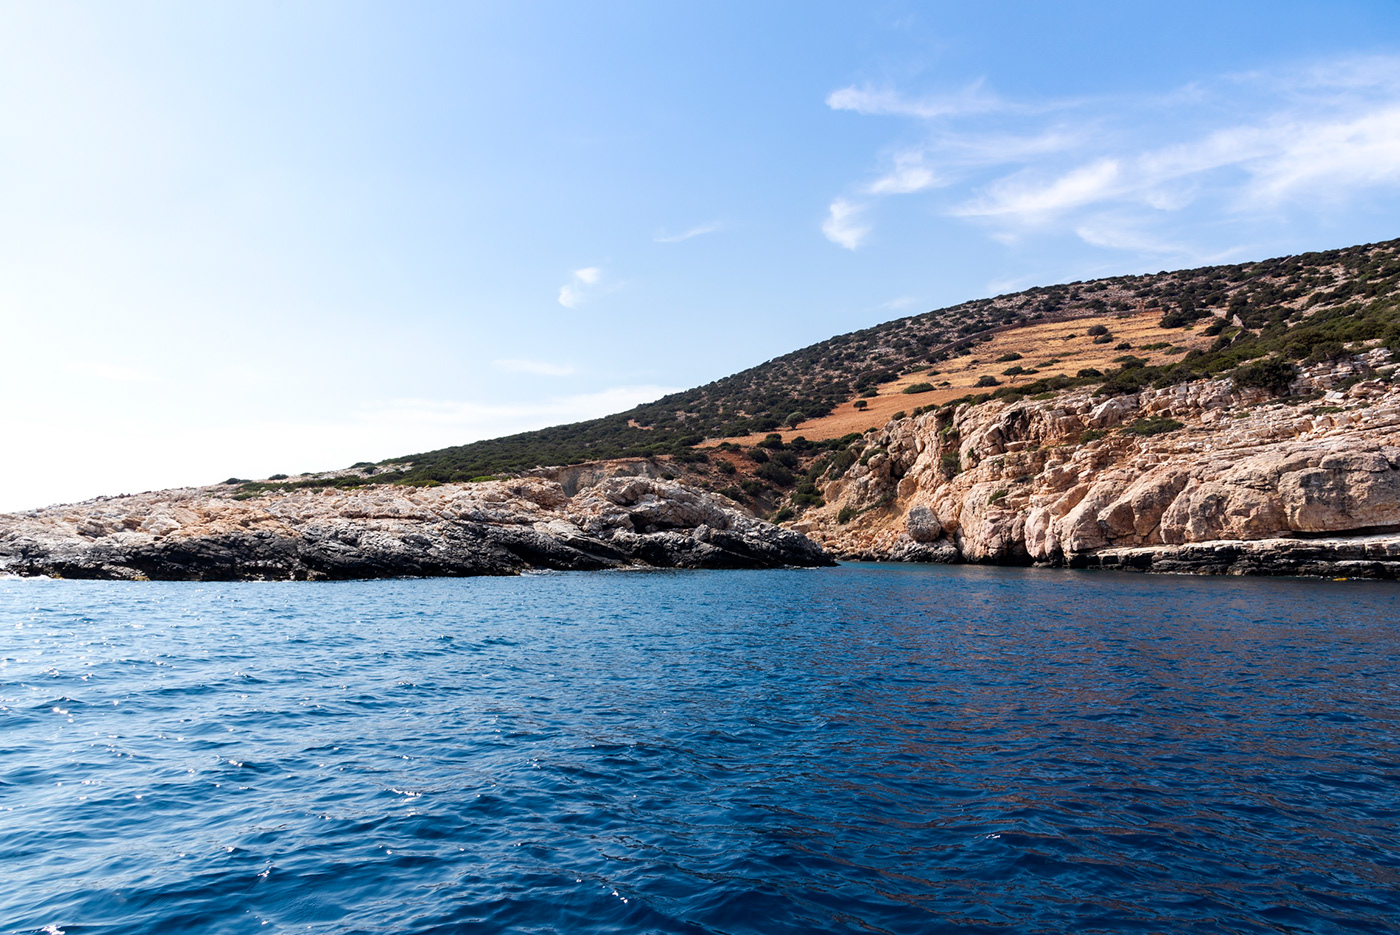 Greece islands greek santorini Paros water Ocean sea light culture